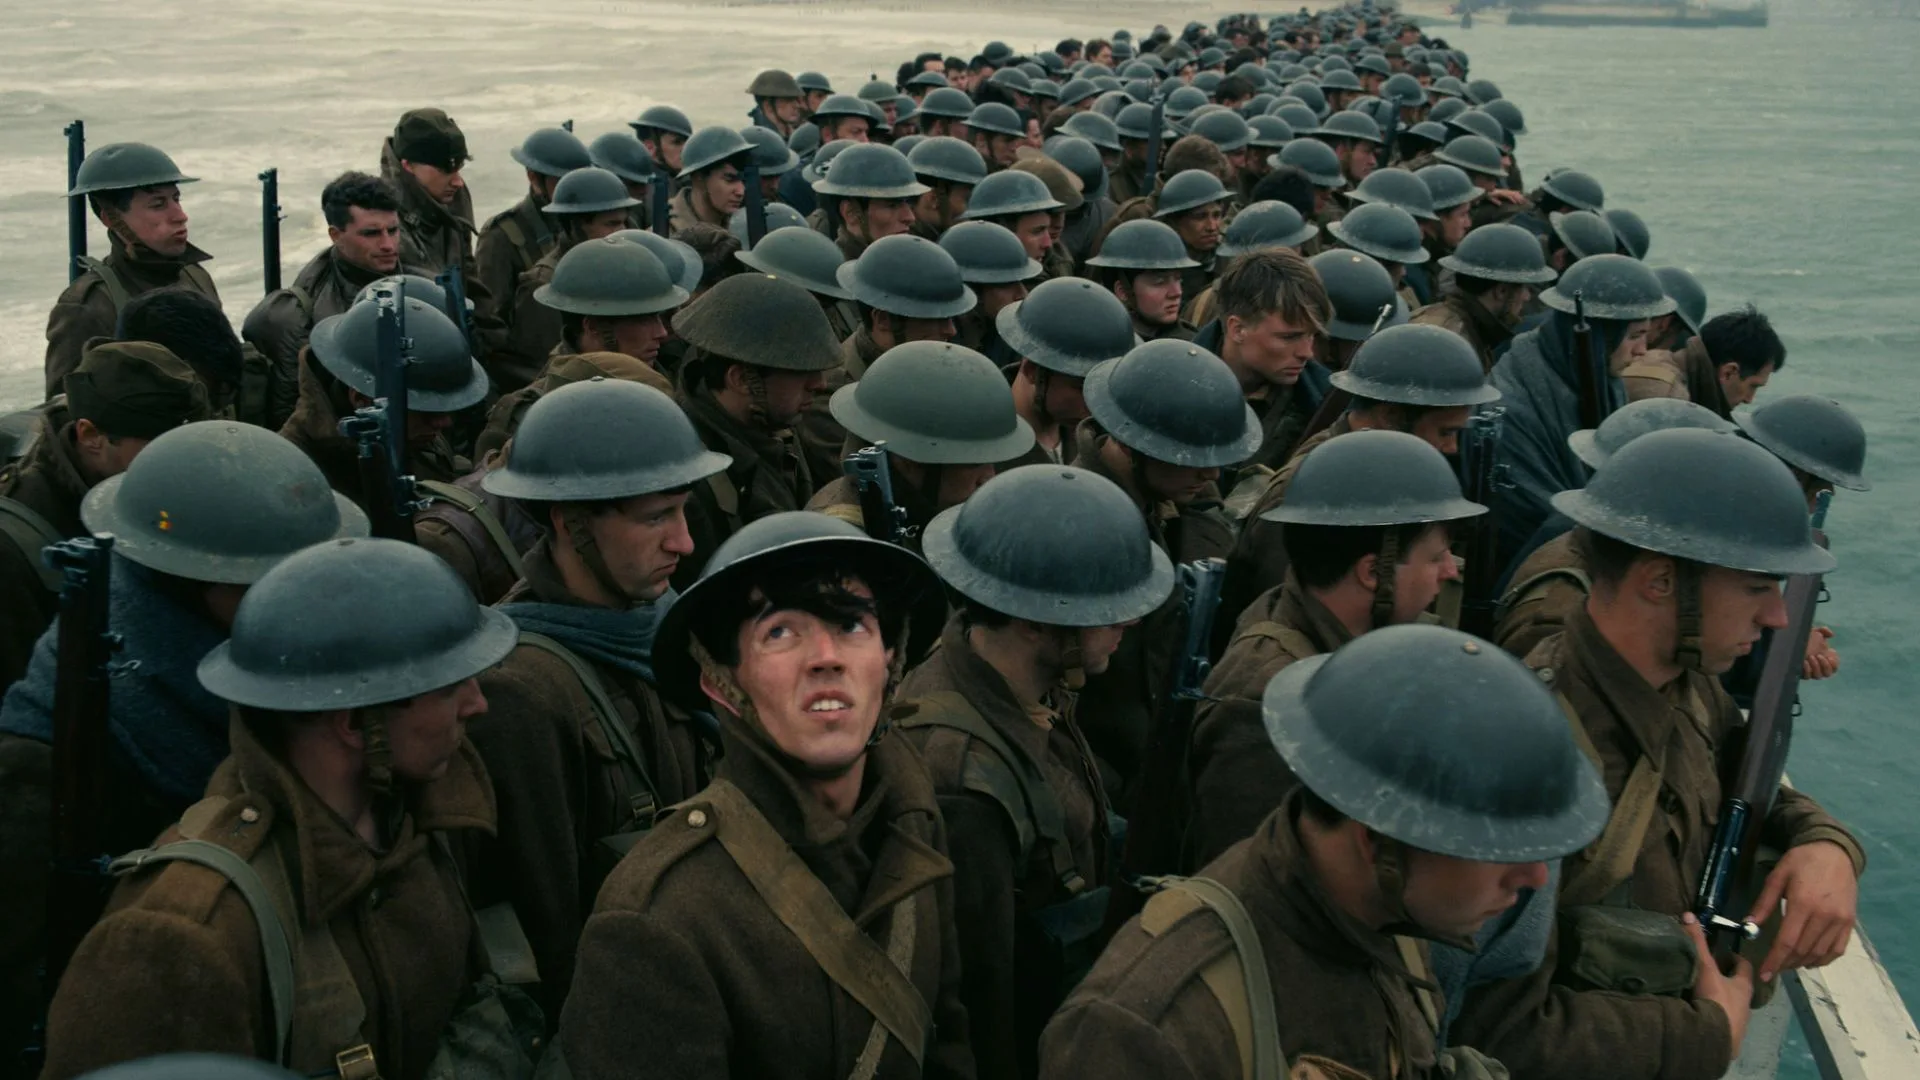 Dirigida por Christopher Nolan, esta obra narra la evacuación de las fuerzas aliadas desde las playas de Dunkerque, Francia,